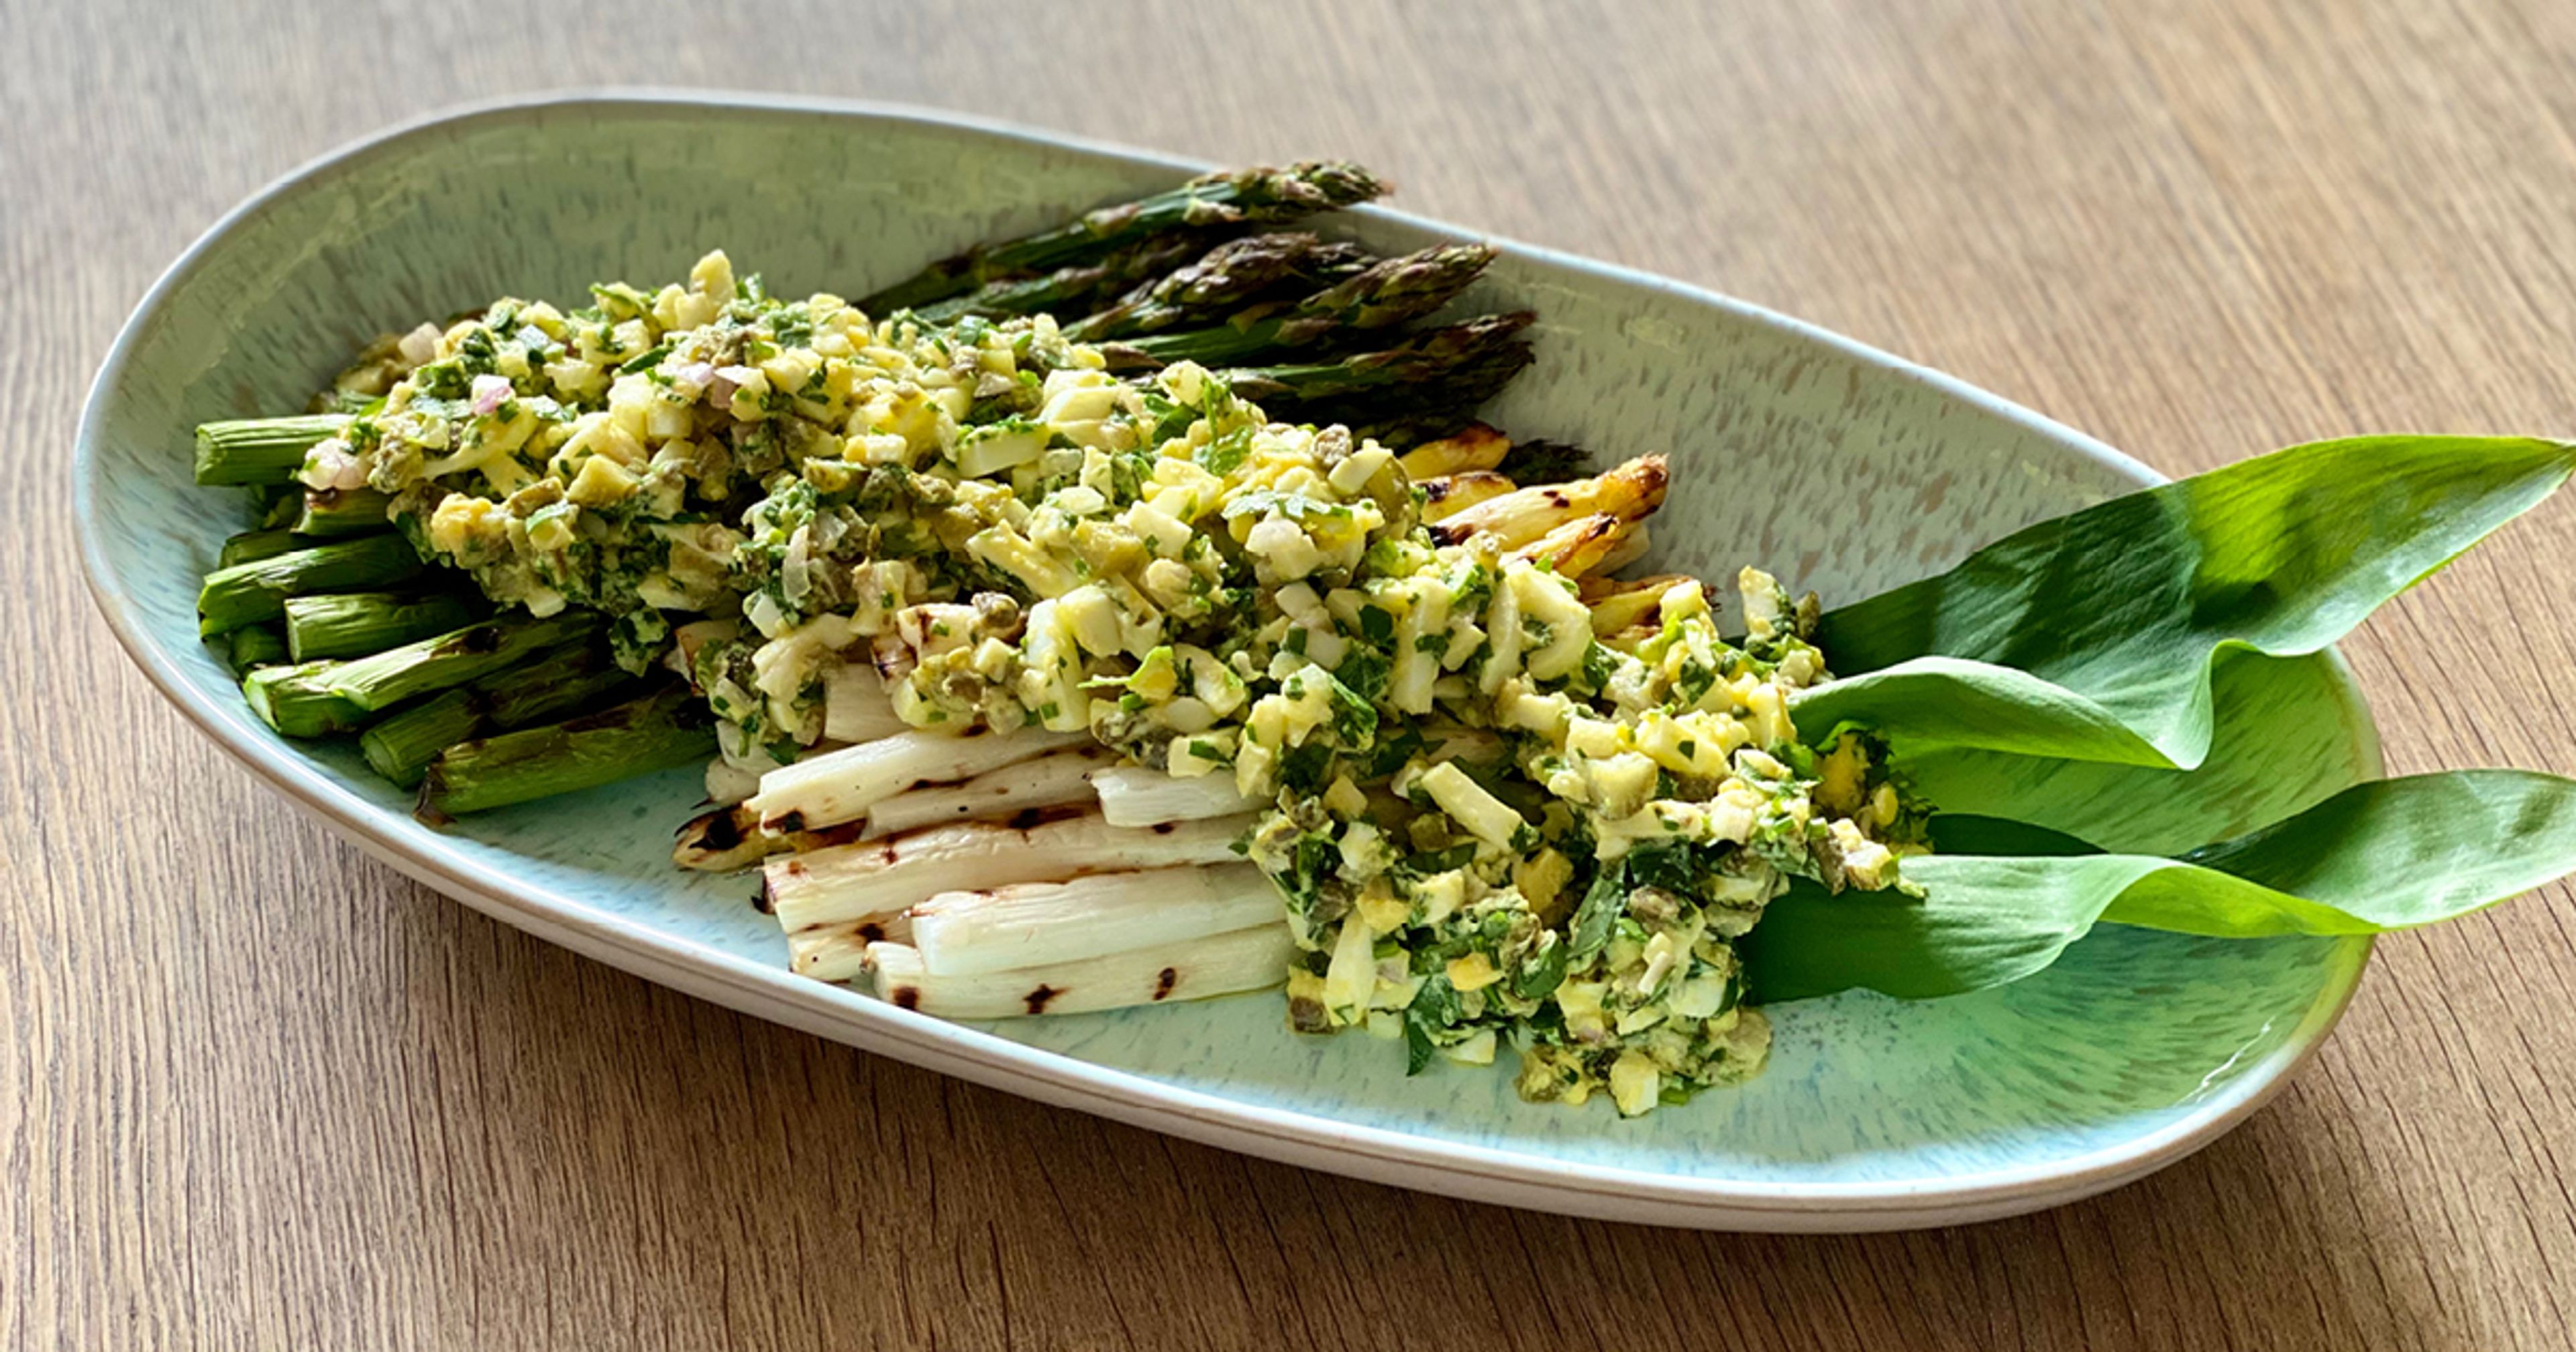 Sådan laver du grillede grønne og hvide asparges med sennepssauce